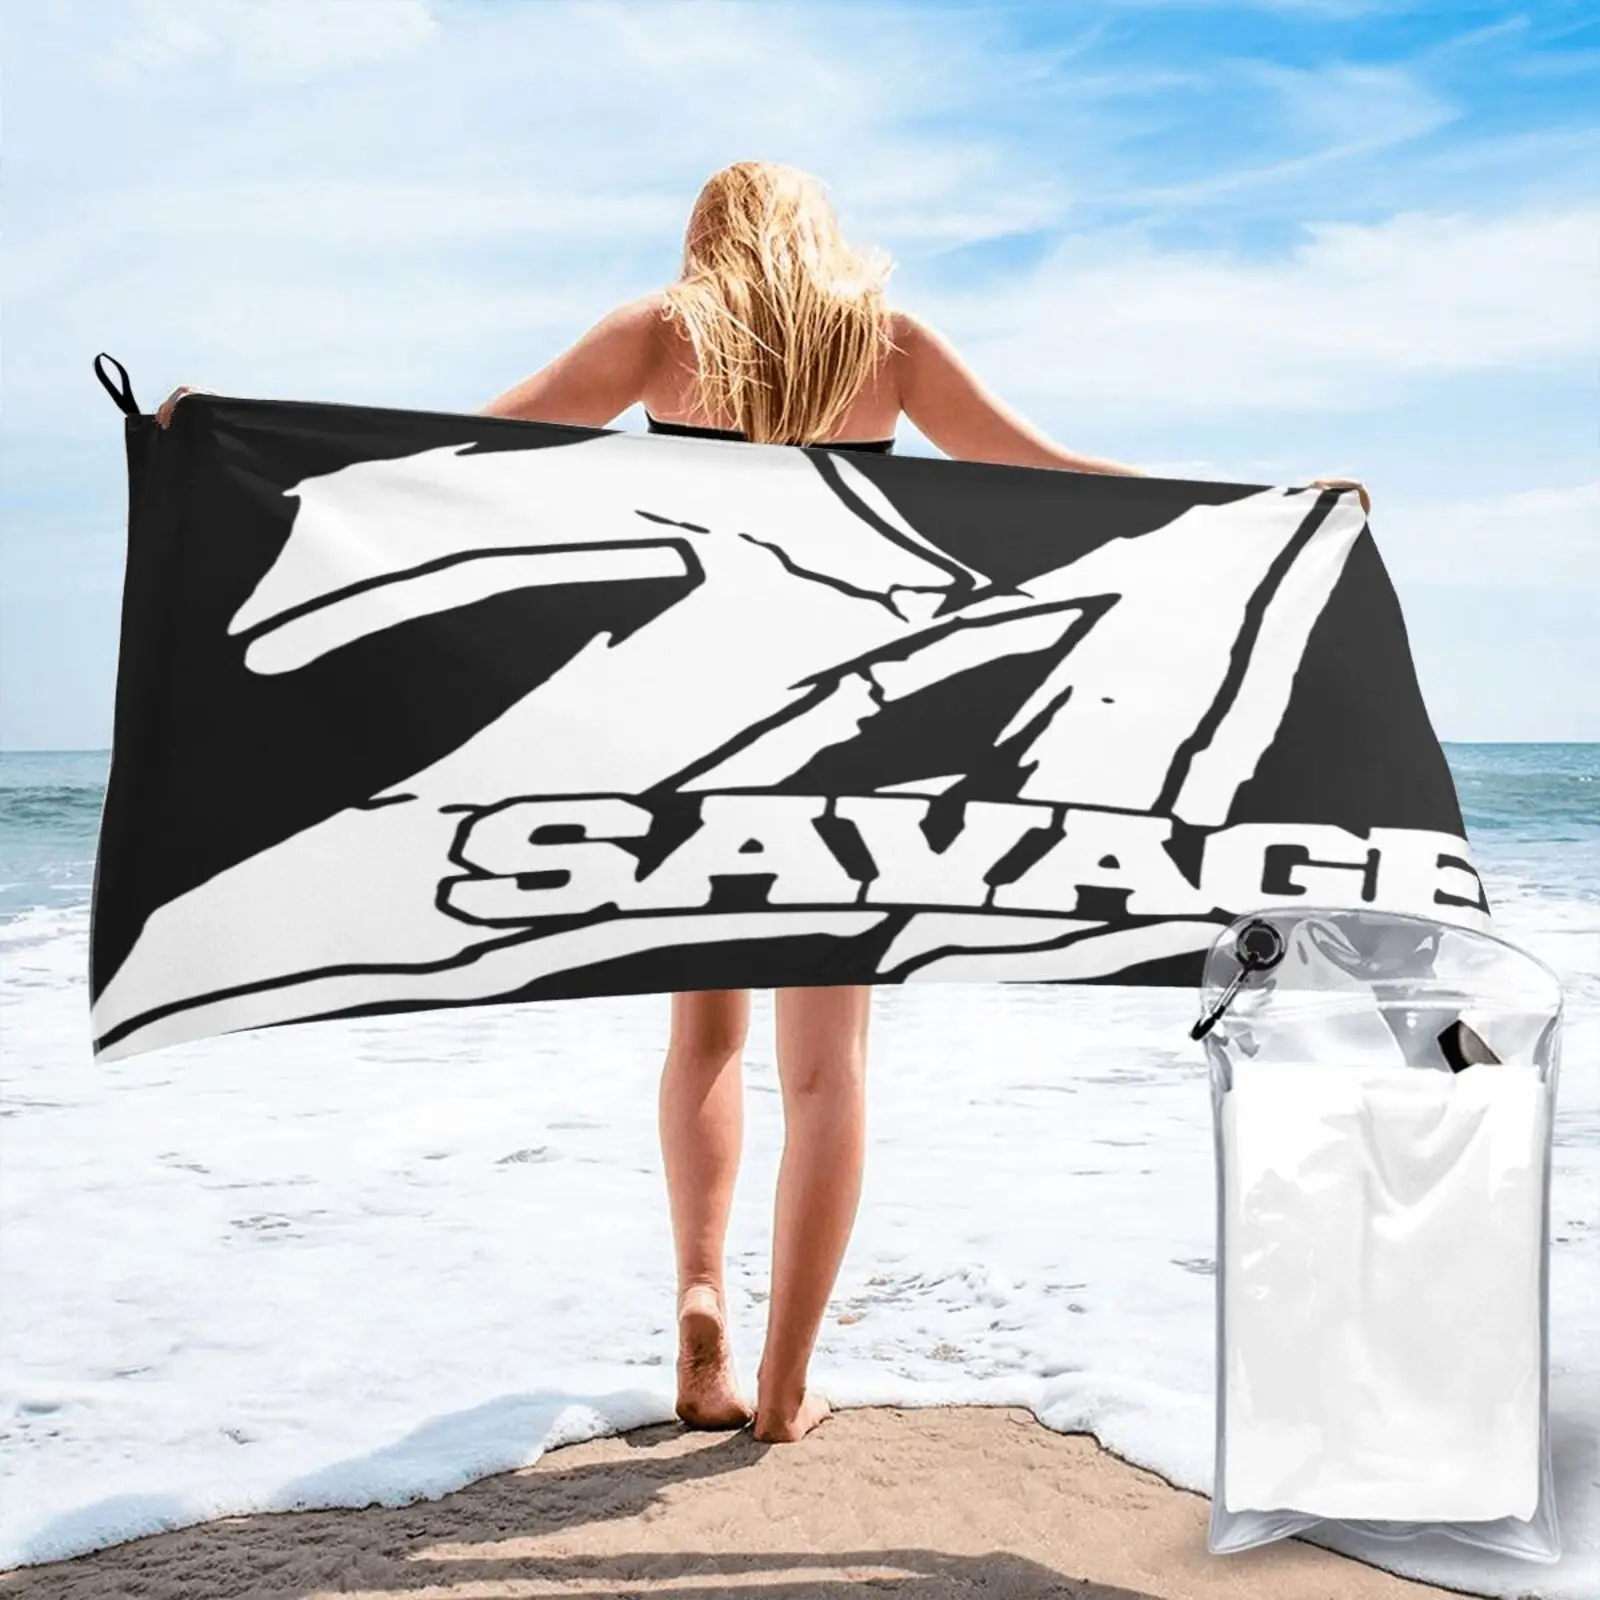 

21 savage Band светящееся в пляже полотенце для пляжа роскошное пляжное полотенце Пляжная накидка Большое банное полотенце s